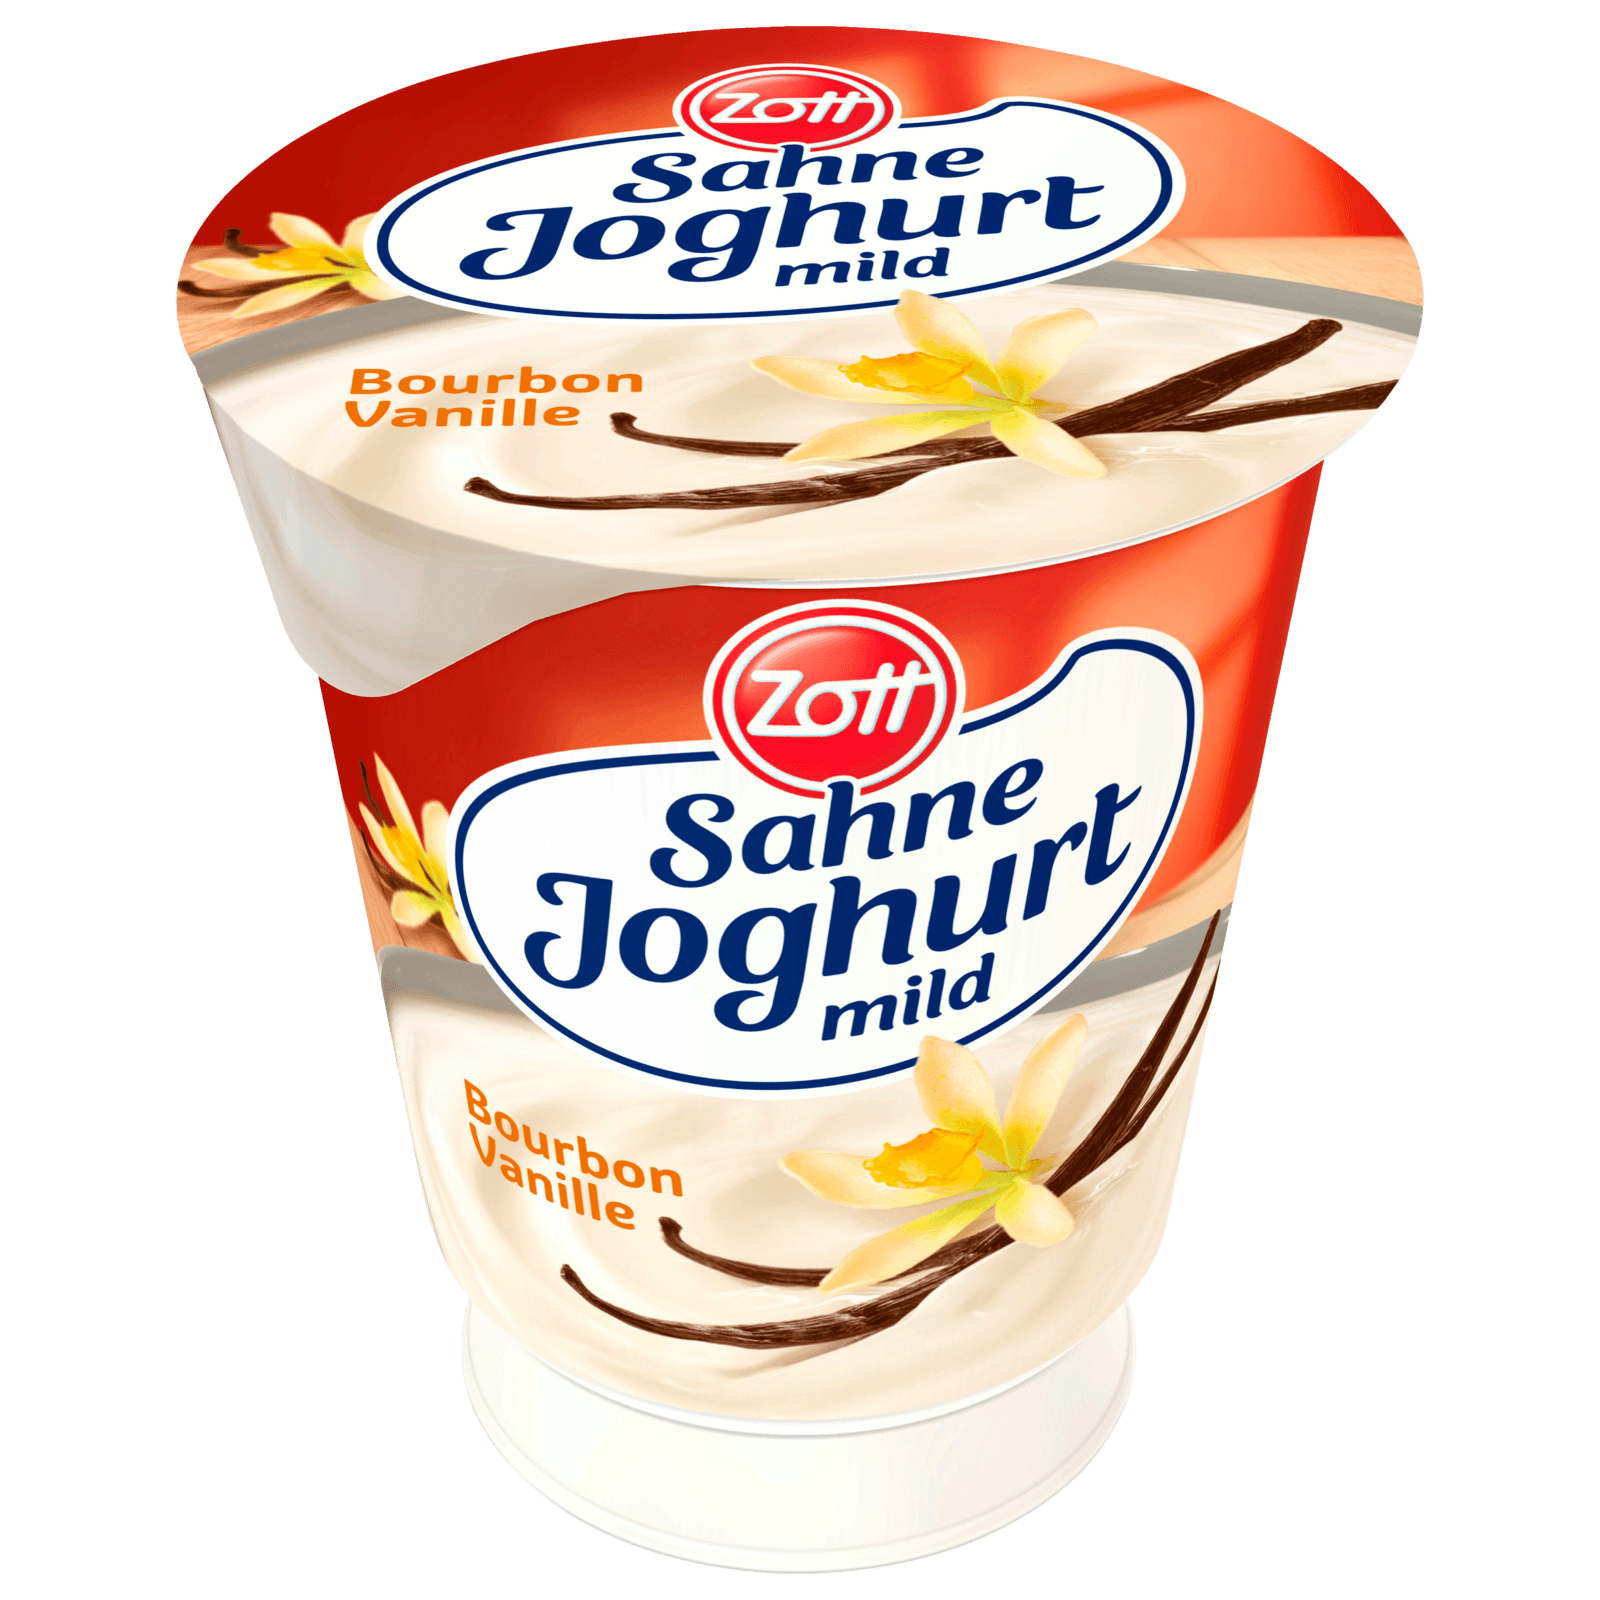 Zott Sahnejoghurt Bourbon-Vanille 150g  für 0.89 EUR